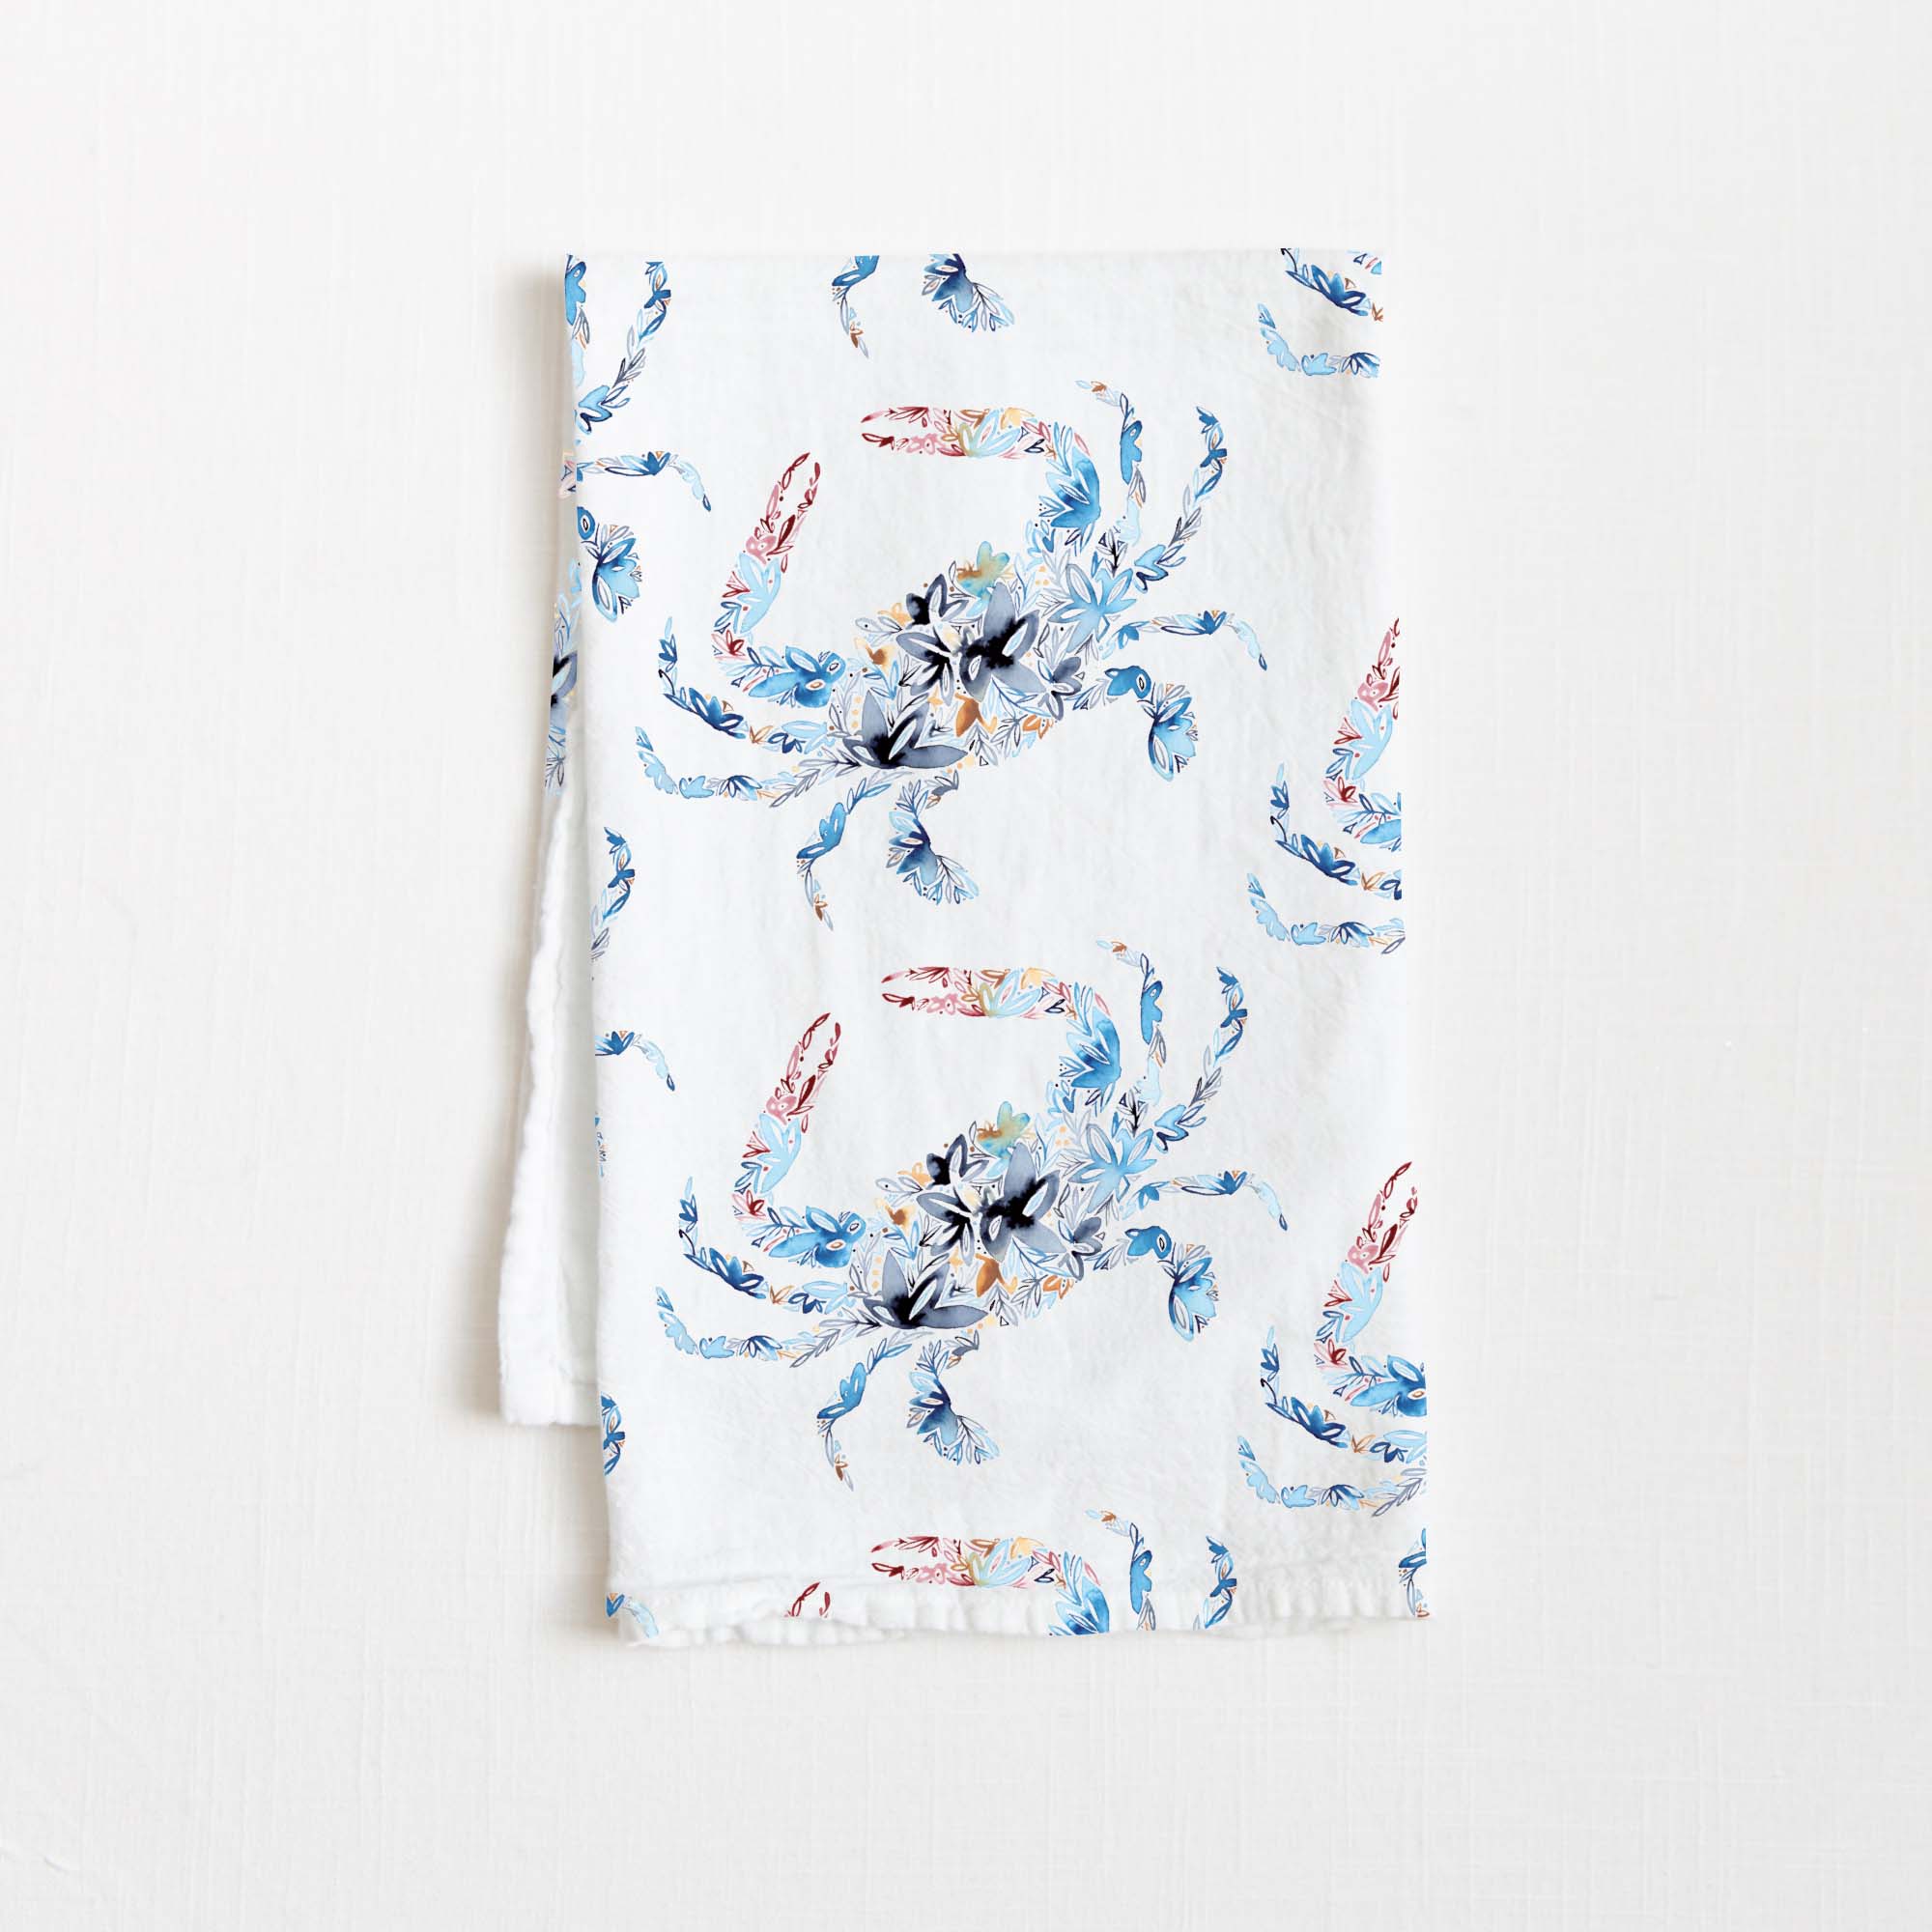 Seaside Tea Towel in White Flour Sack - Blue Kite Press